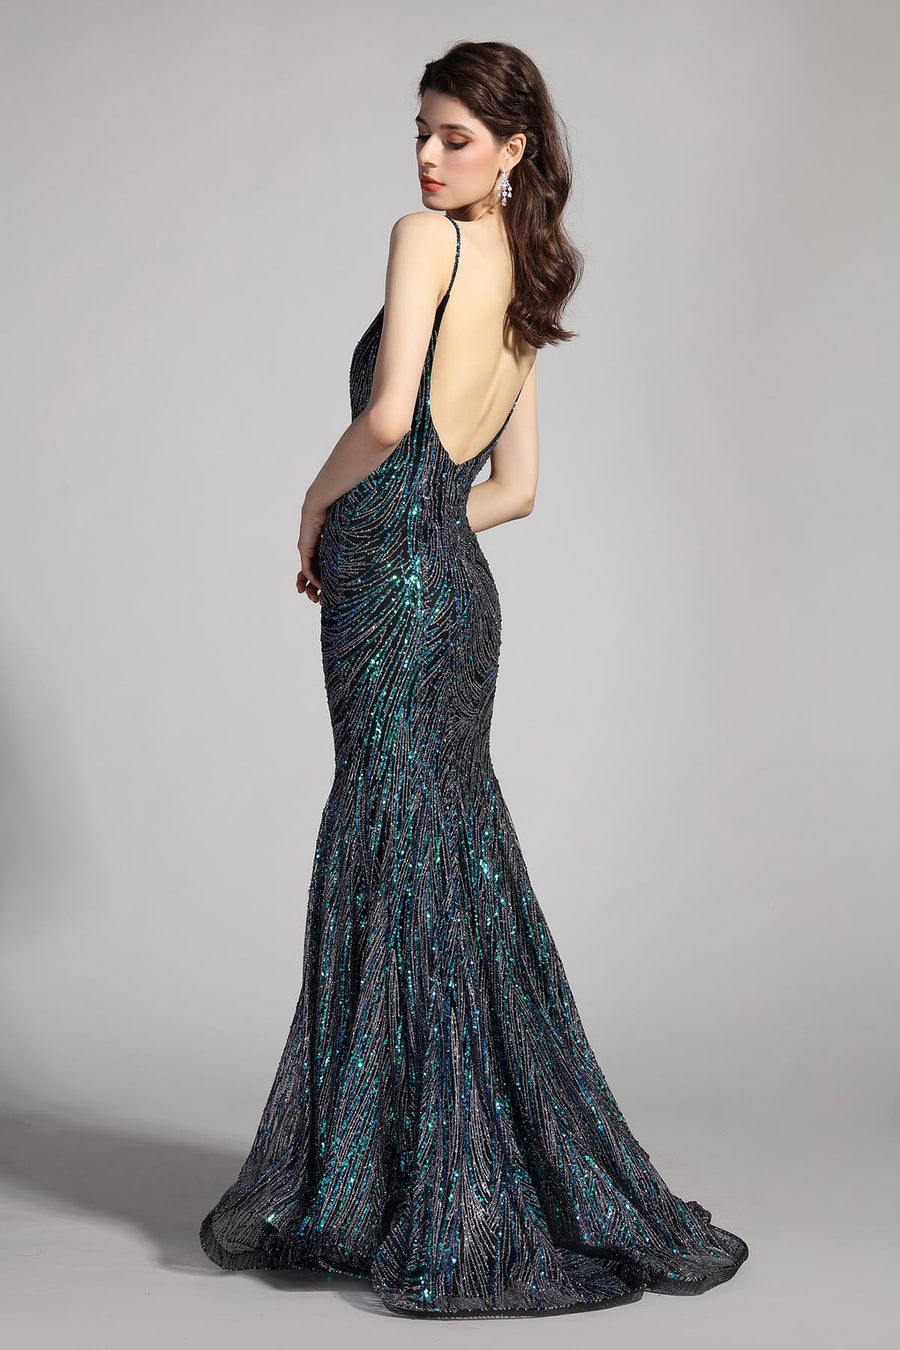 Mermaid/Trumpet V-neck Sleeveless Full Length Sequined Promo Dresses